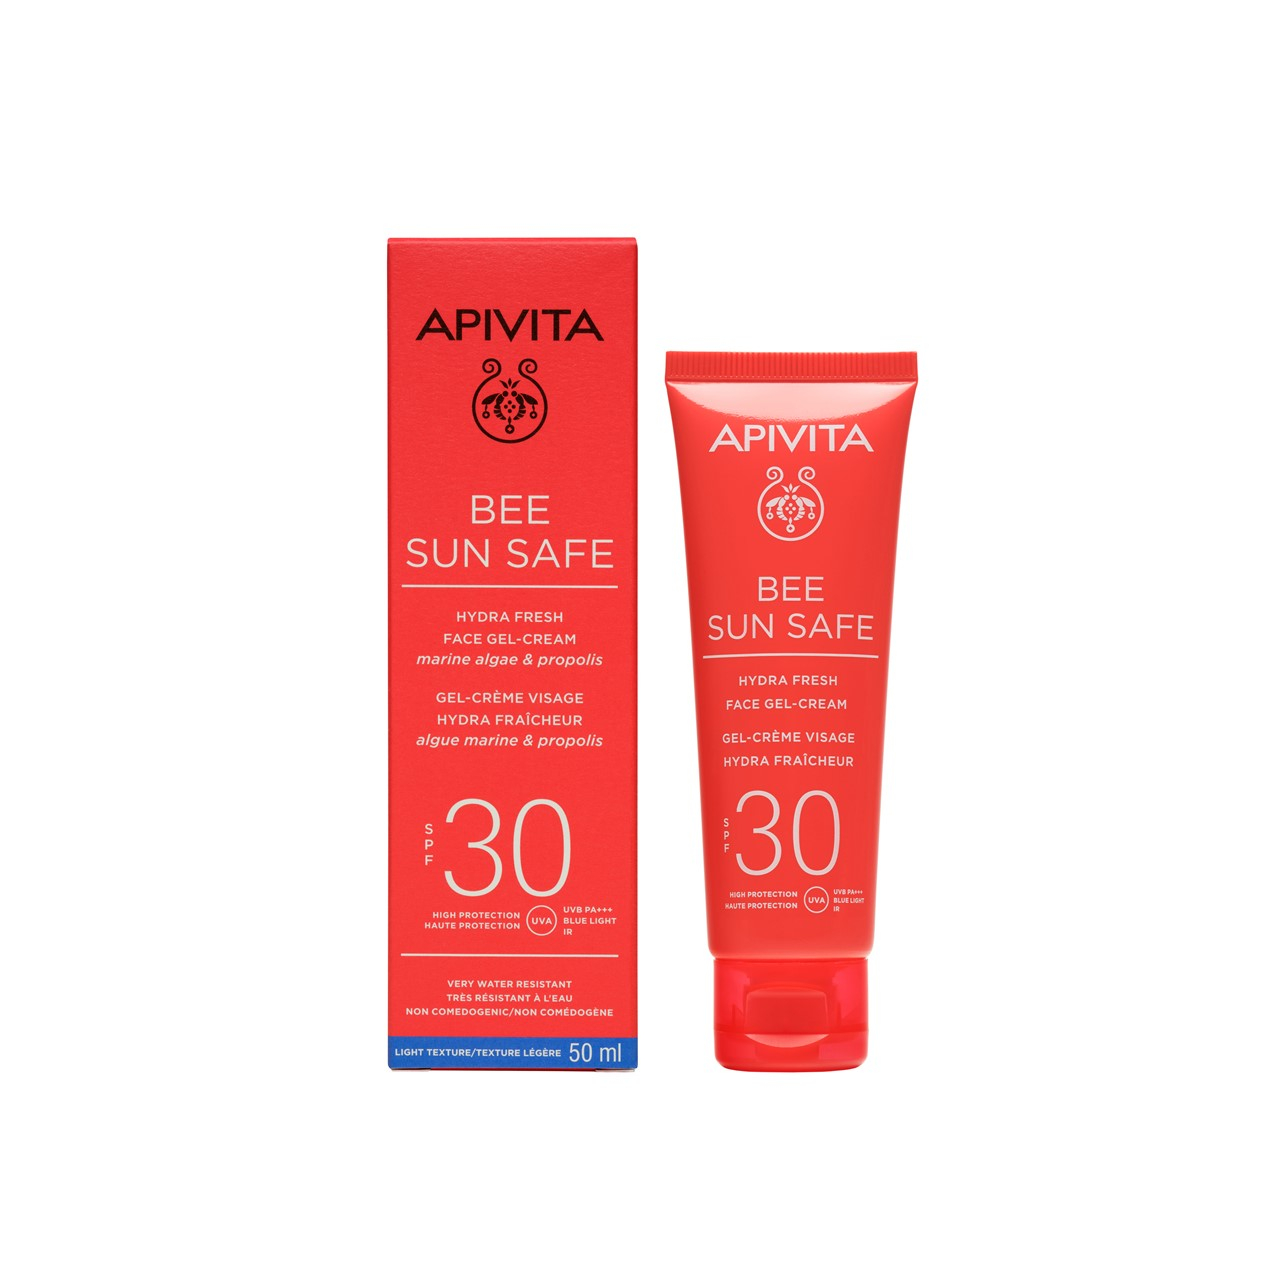 APIVITA Bee Sun Safe Hydra Fresh Face Gel-Cream SPF30 50ml (1.69fl oz)